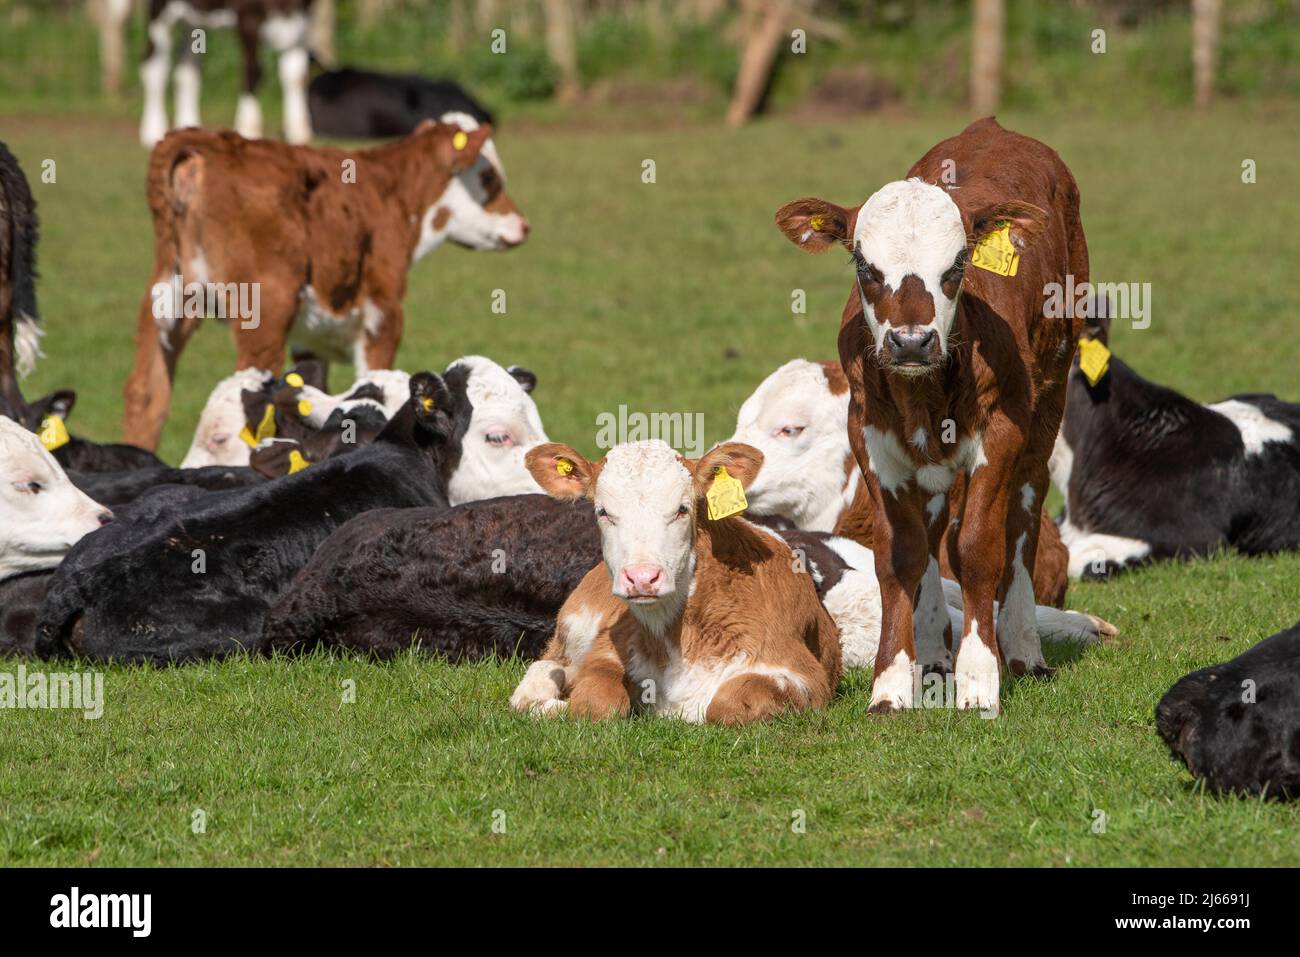 Calves in a field, Cumbria, UK Stock Photo